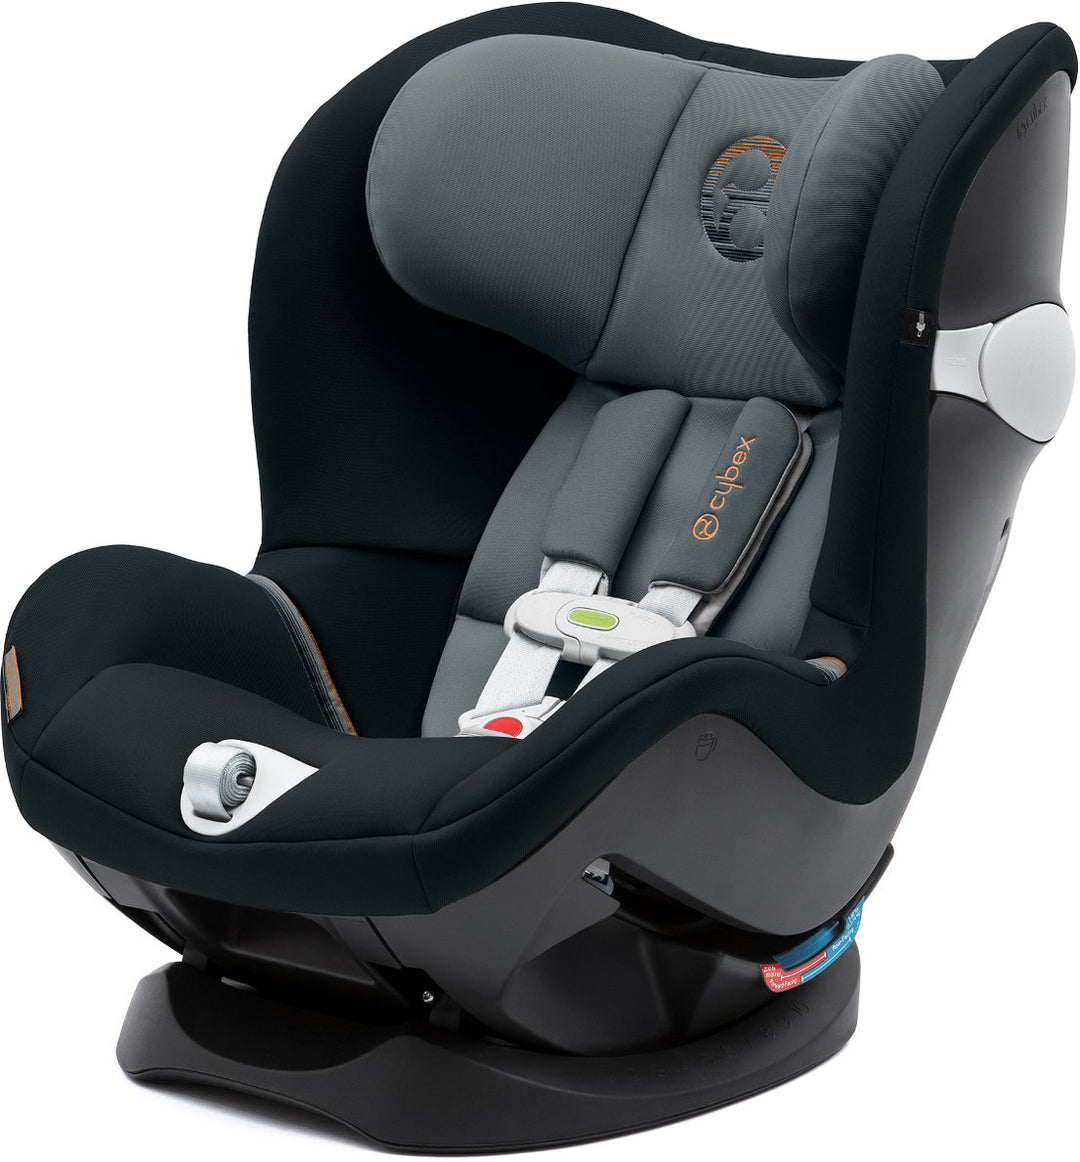 Cybex présente un siège-auto connecté pour bébé : le Sirona M SensorSafe  2.0